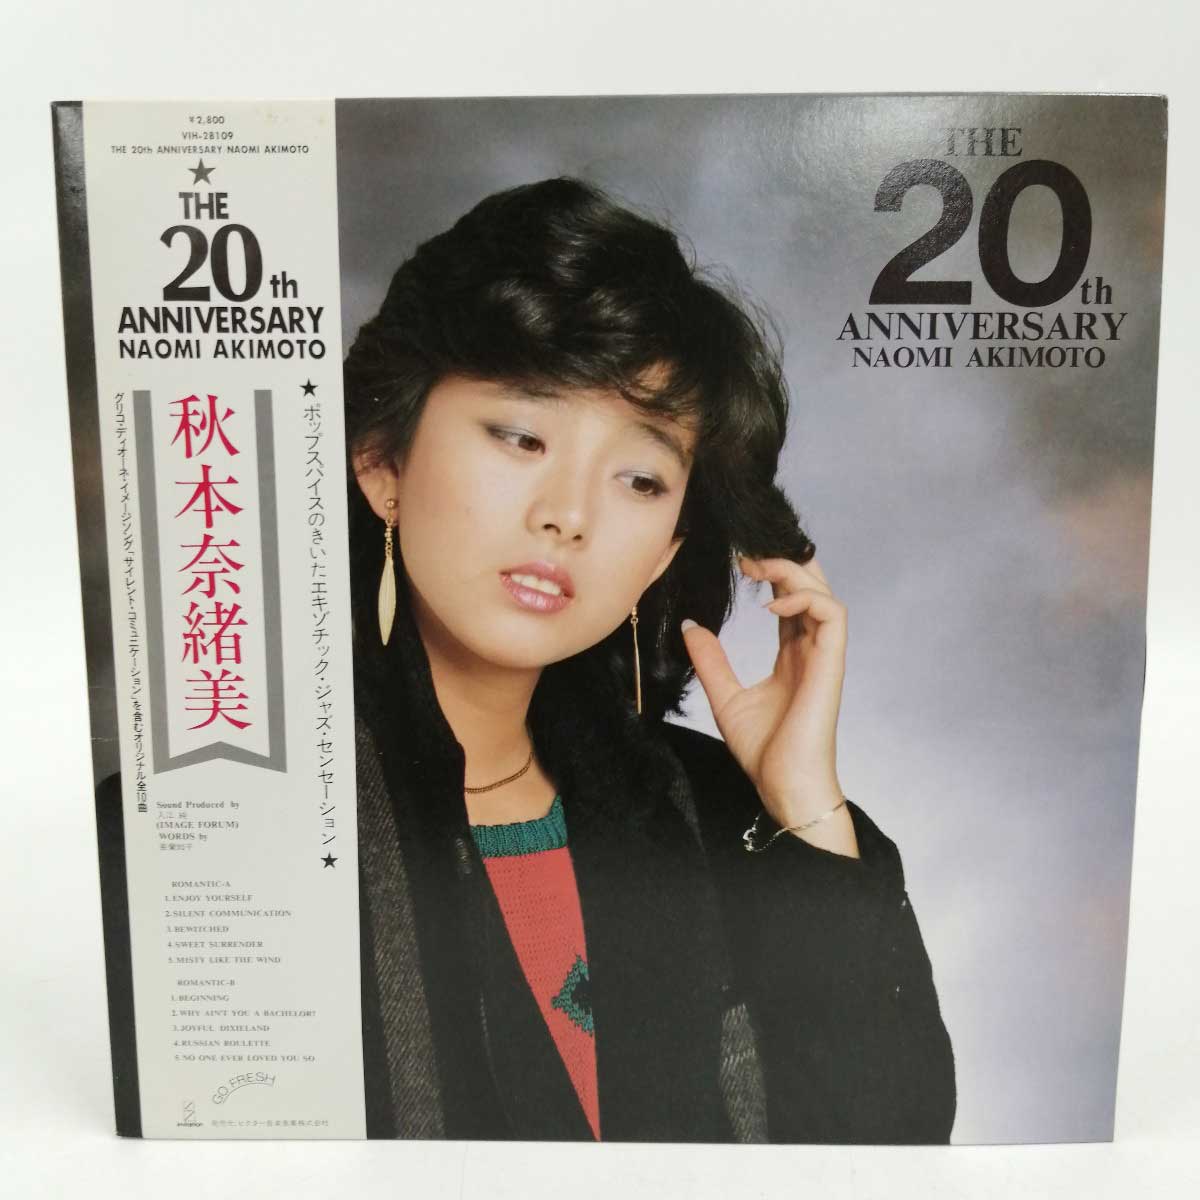 【中古】LPレコード「THE 20th ANNIVERSARY 秋本奈緒美」VIH-28109 ビクター 帯付 LP盤 和ジャズ